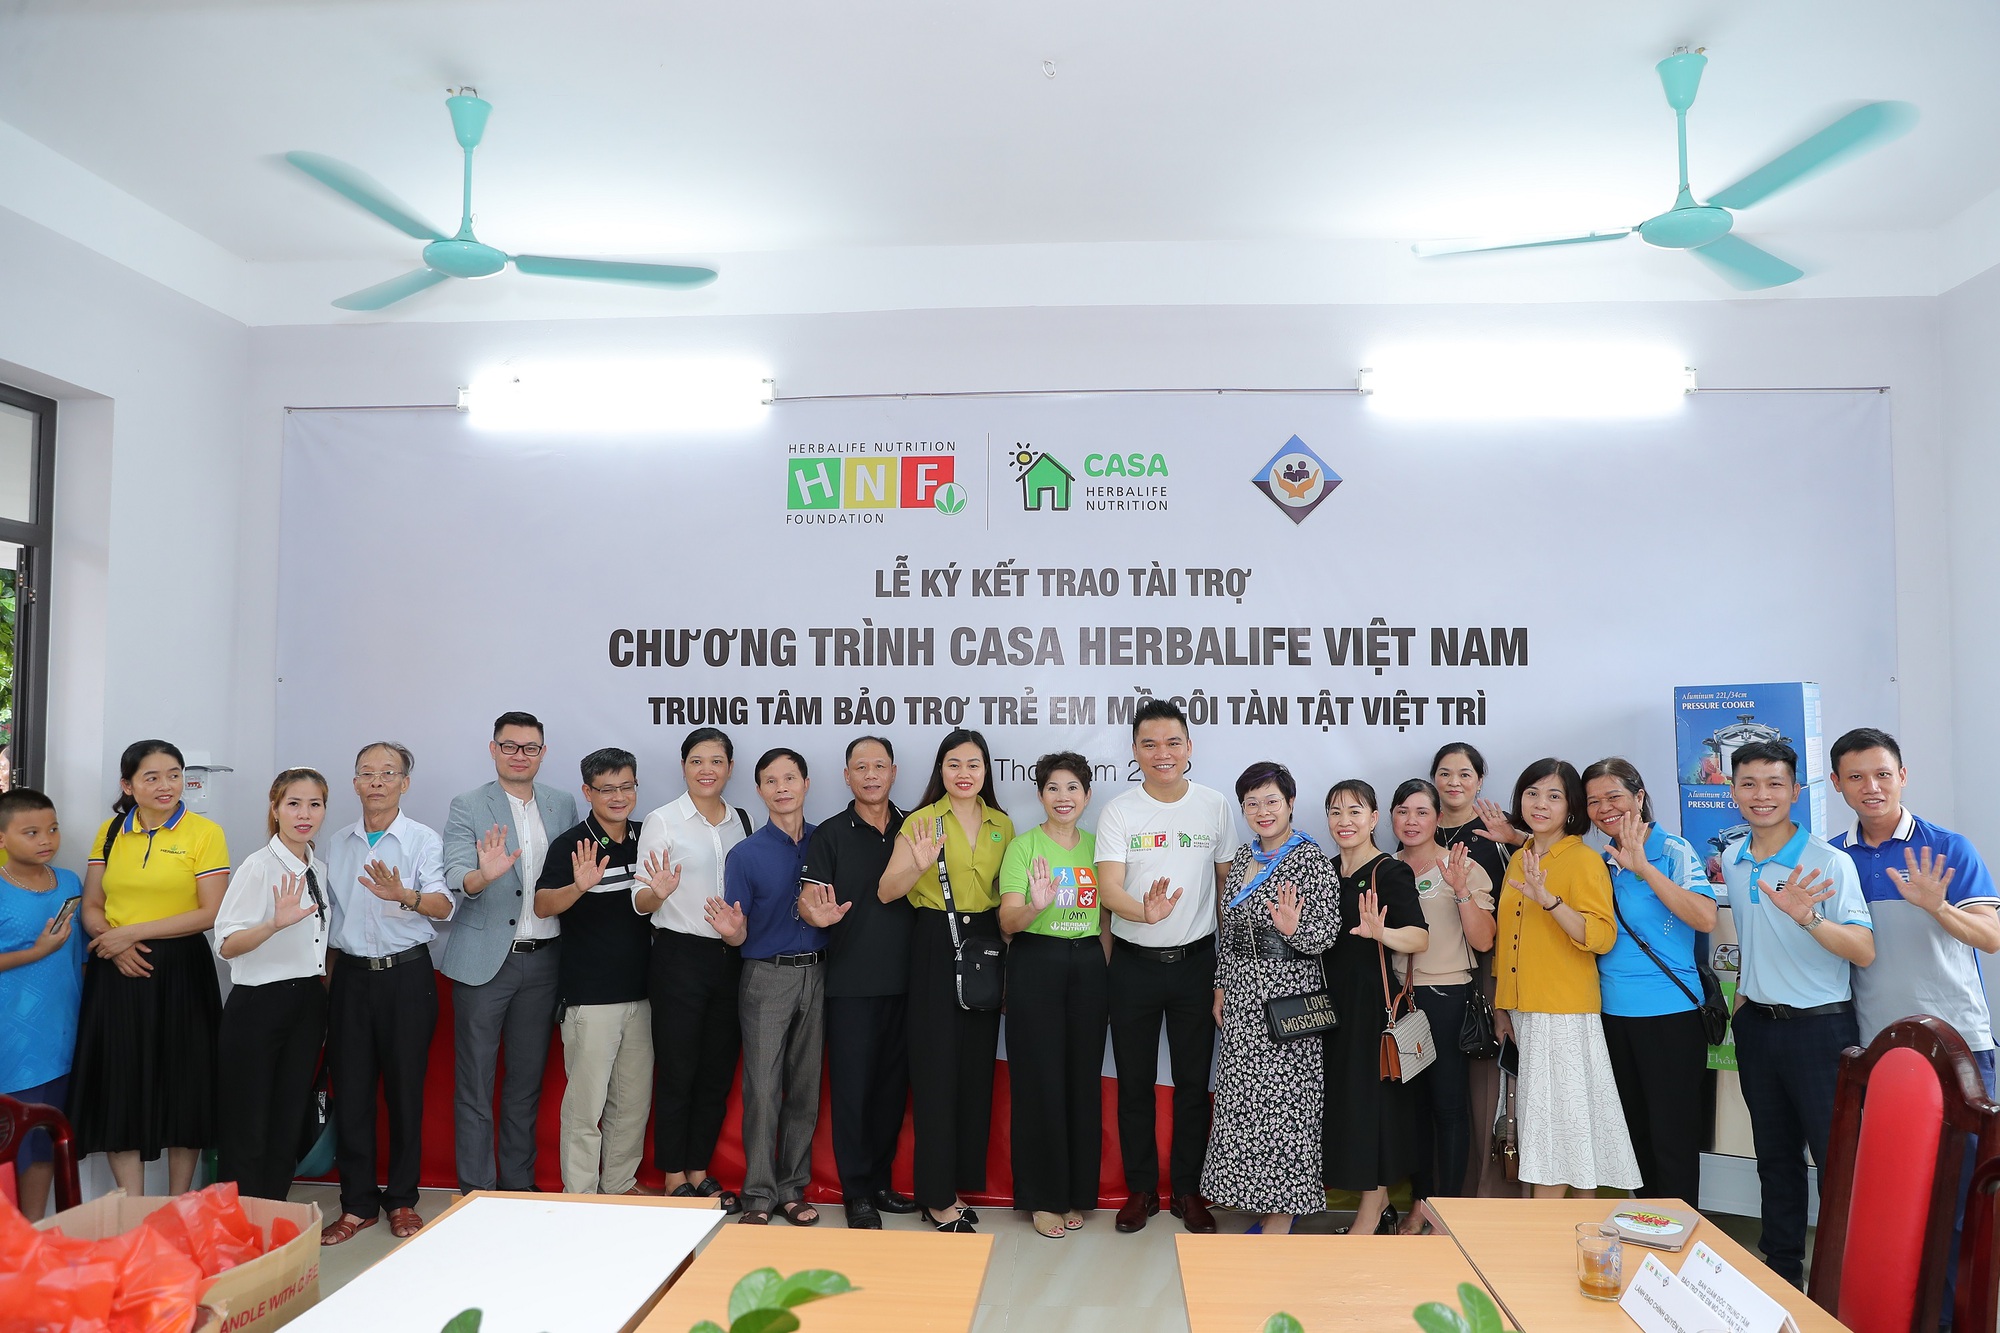 Herbalife Việt Nam hỗ trợ dinh dưỡng lành mạnh cho trẻ em có hoàn cảnh khó khăn tại Trung Tâm Bảo Trợ Trẻ Mồ Côi Tàn Tật Việt Trì - Ảnh 2.